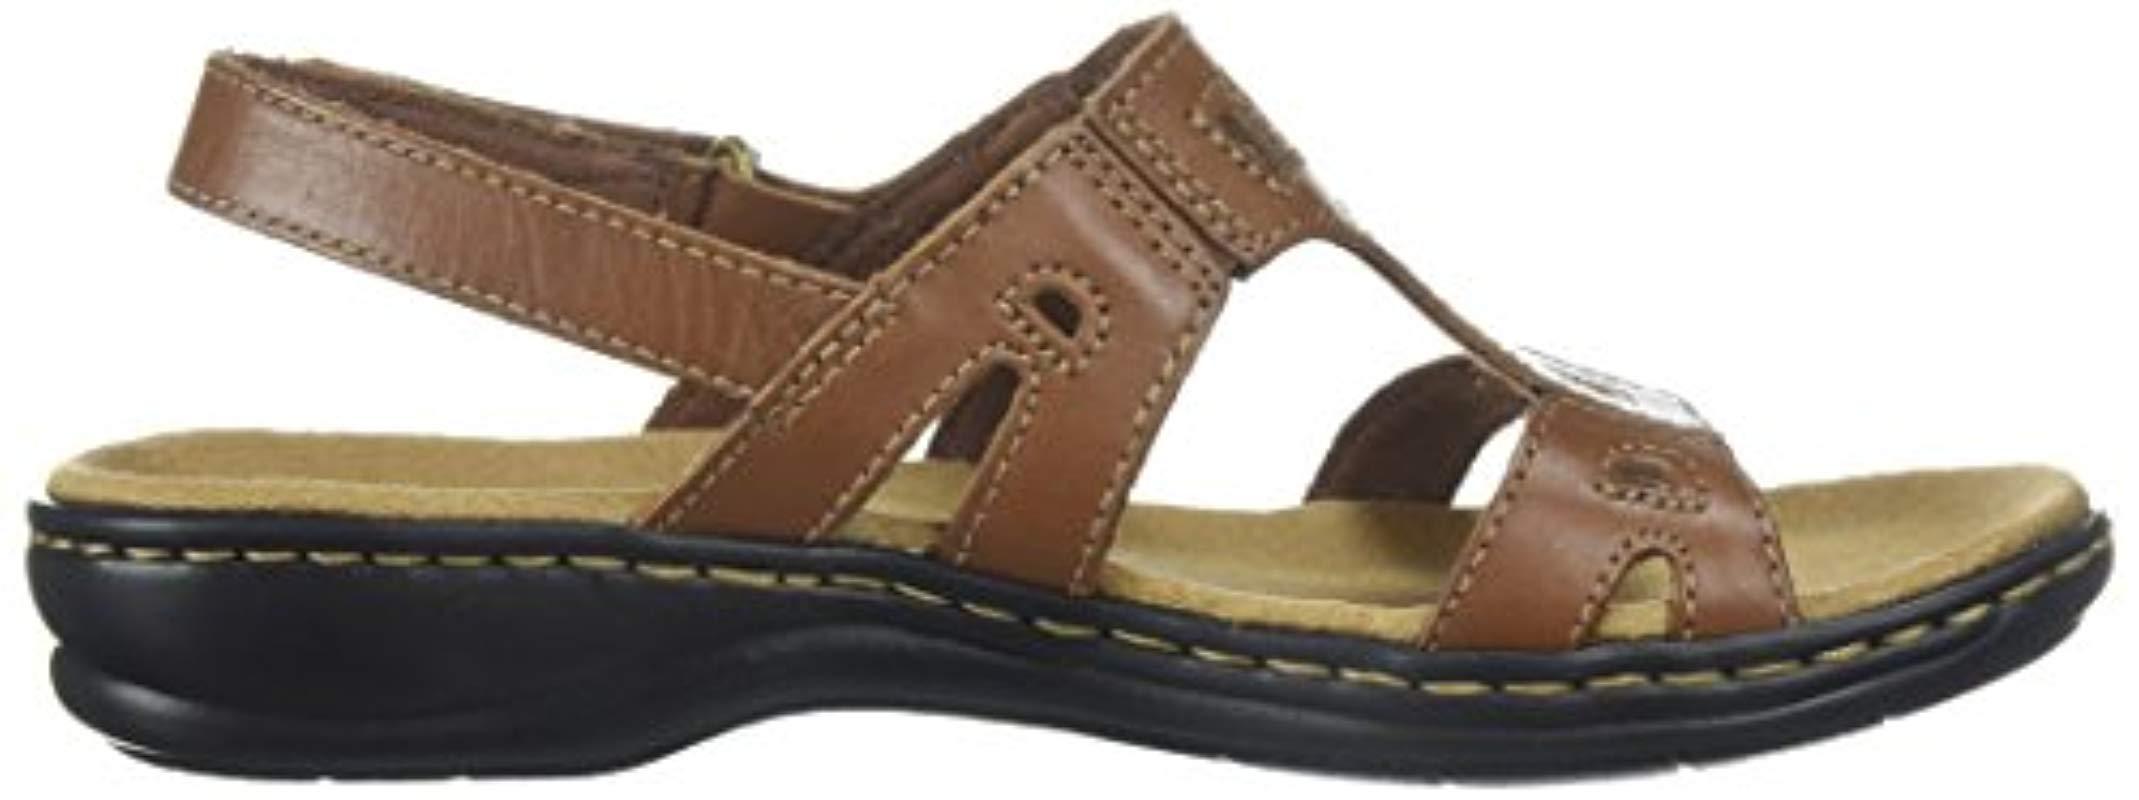 clarks women's leisa annual sandal